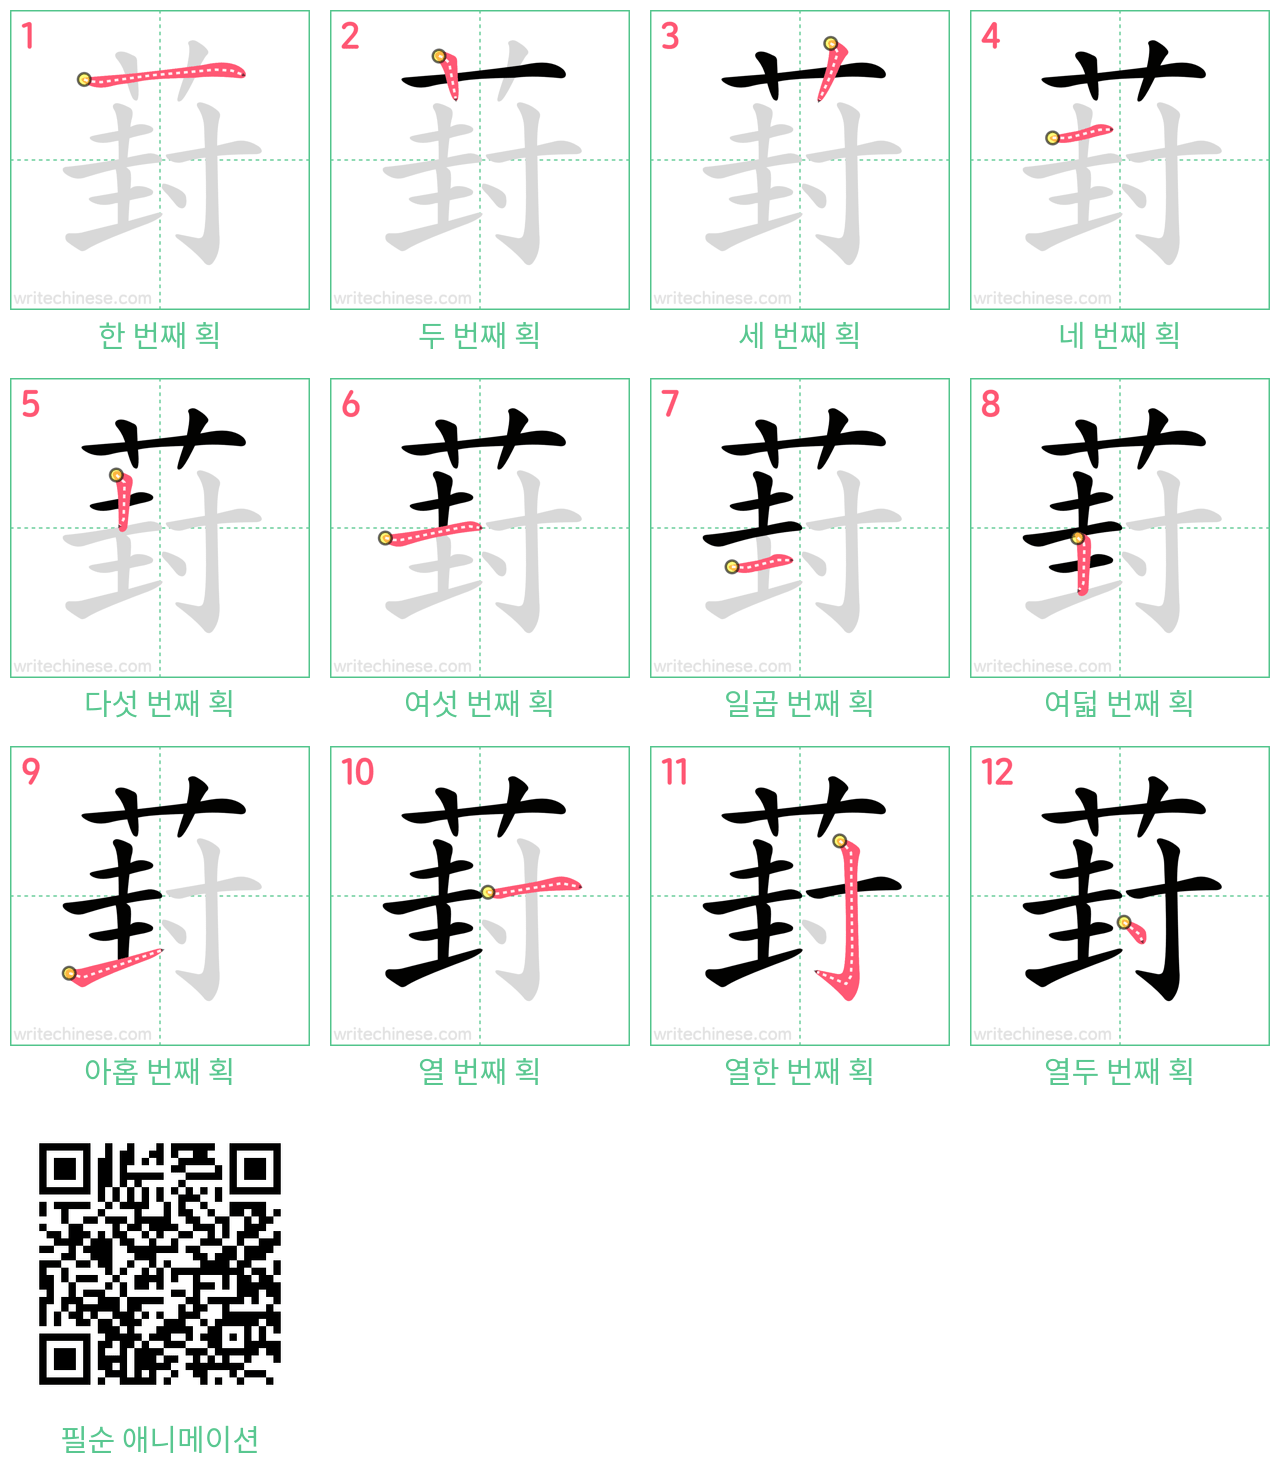 葑 step-by-step stroke order diagrams